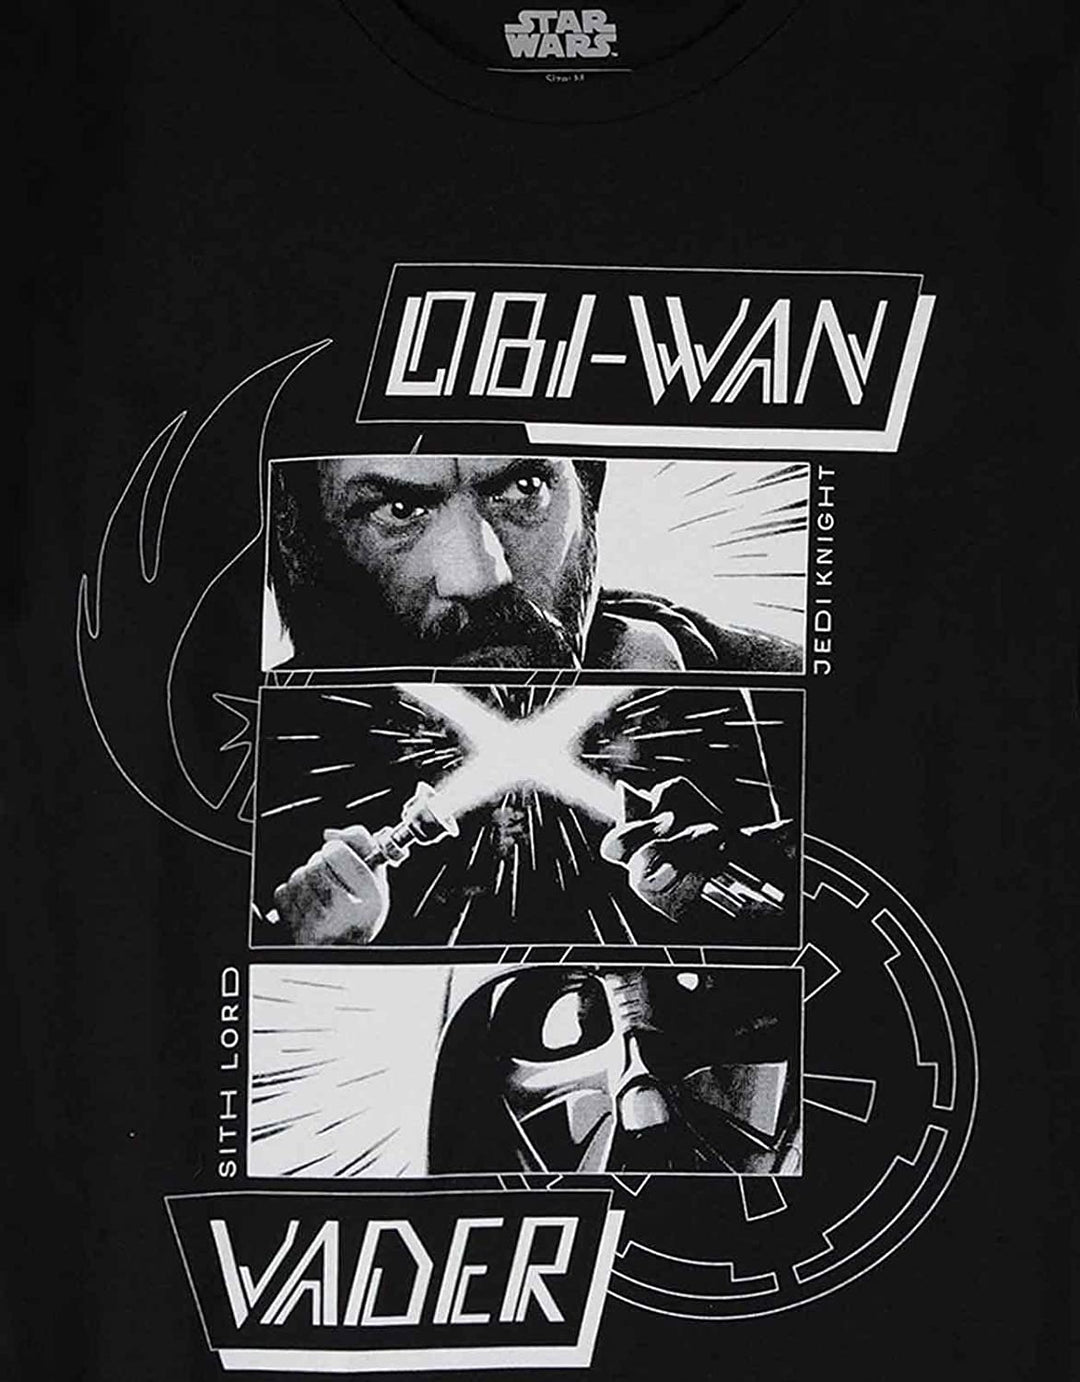 Obi-Wan Kenobi Men's Boys' Regular Fit Short-Sleeved T-Shirt, black, M